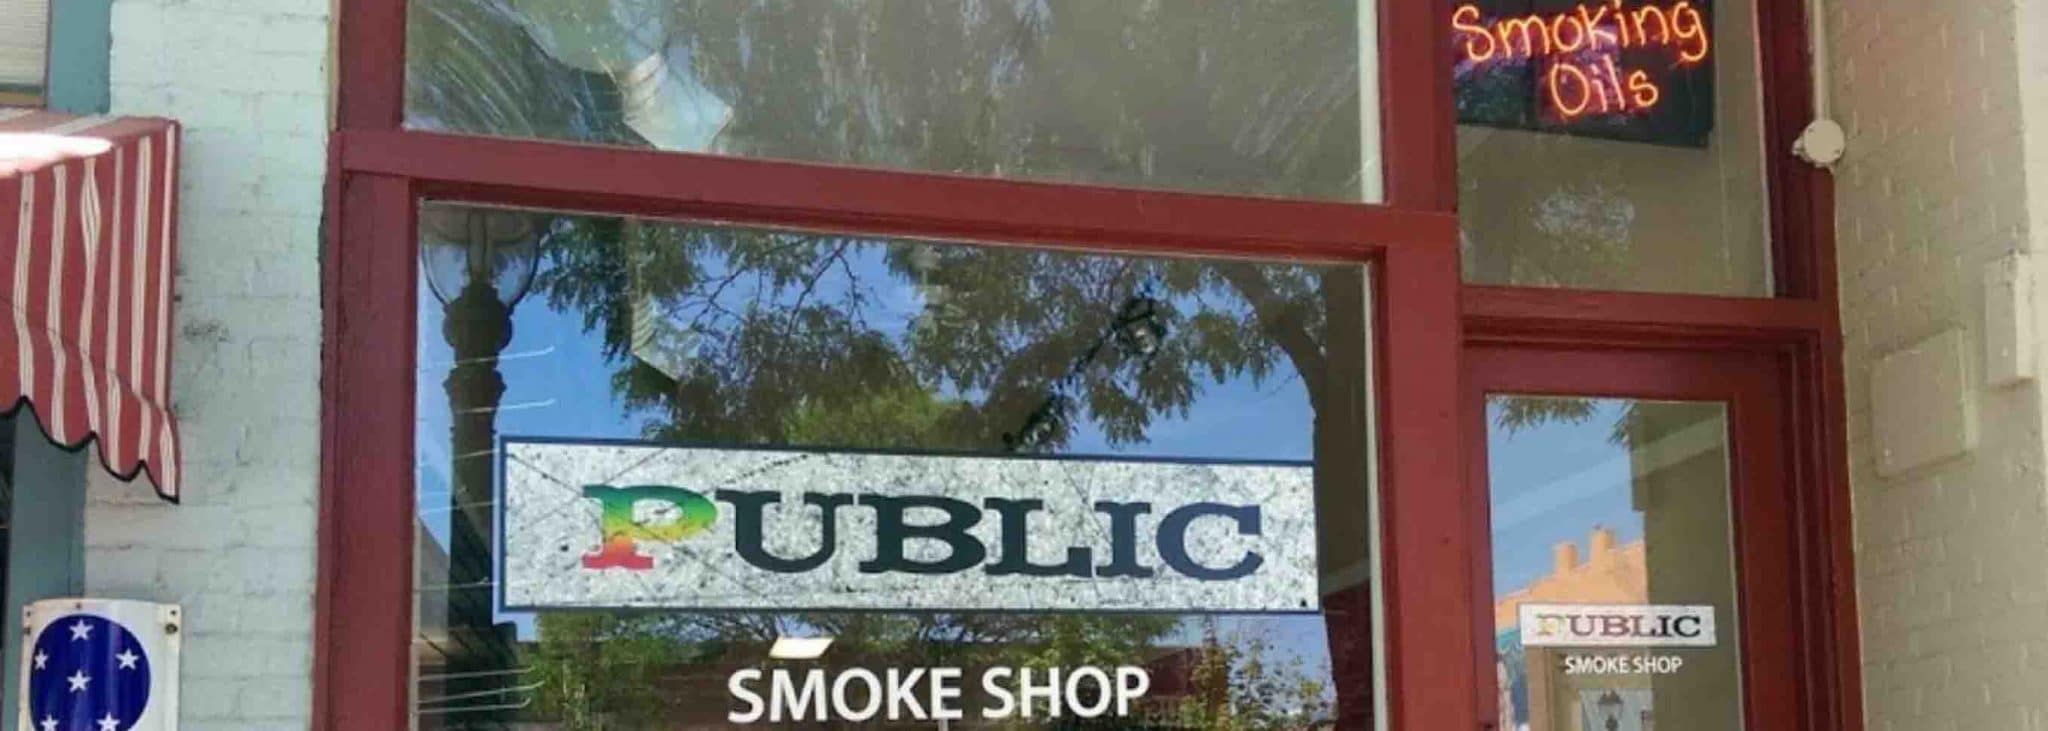 public-smoke-shop